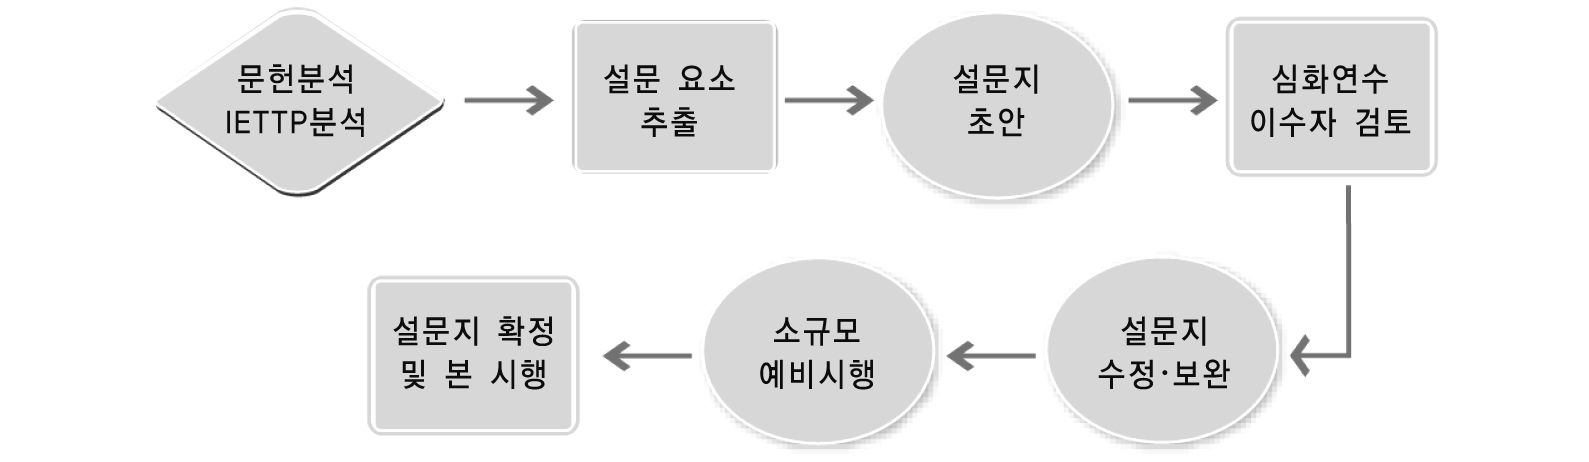 [그림 Ⅲ-1-1] 설문지 개발 과정